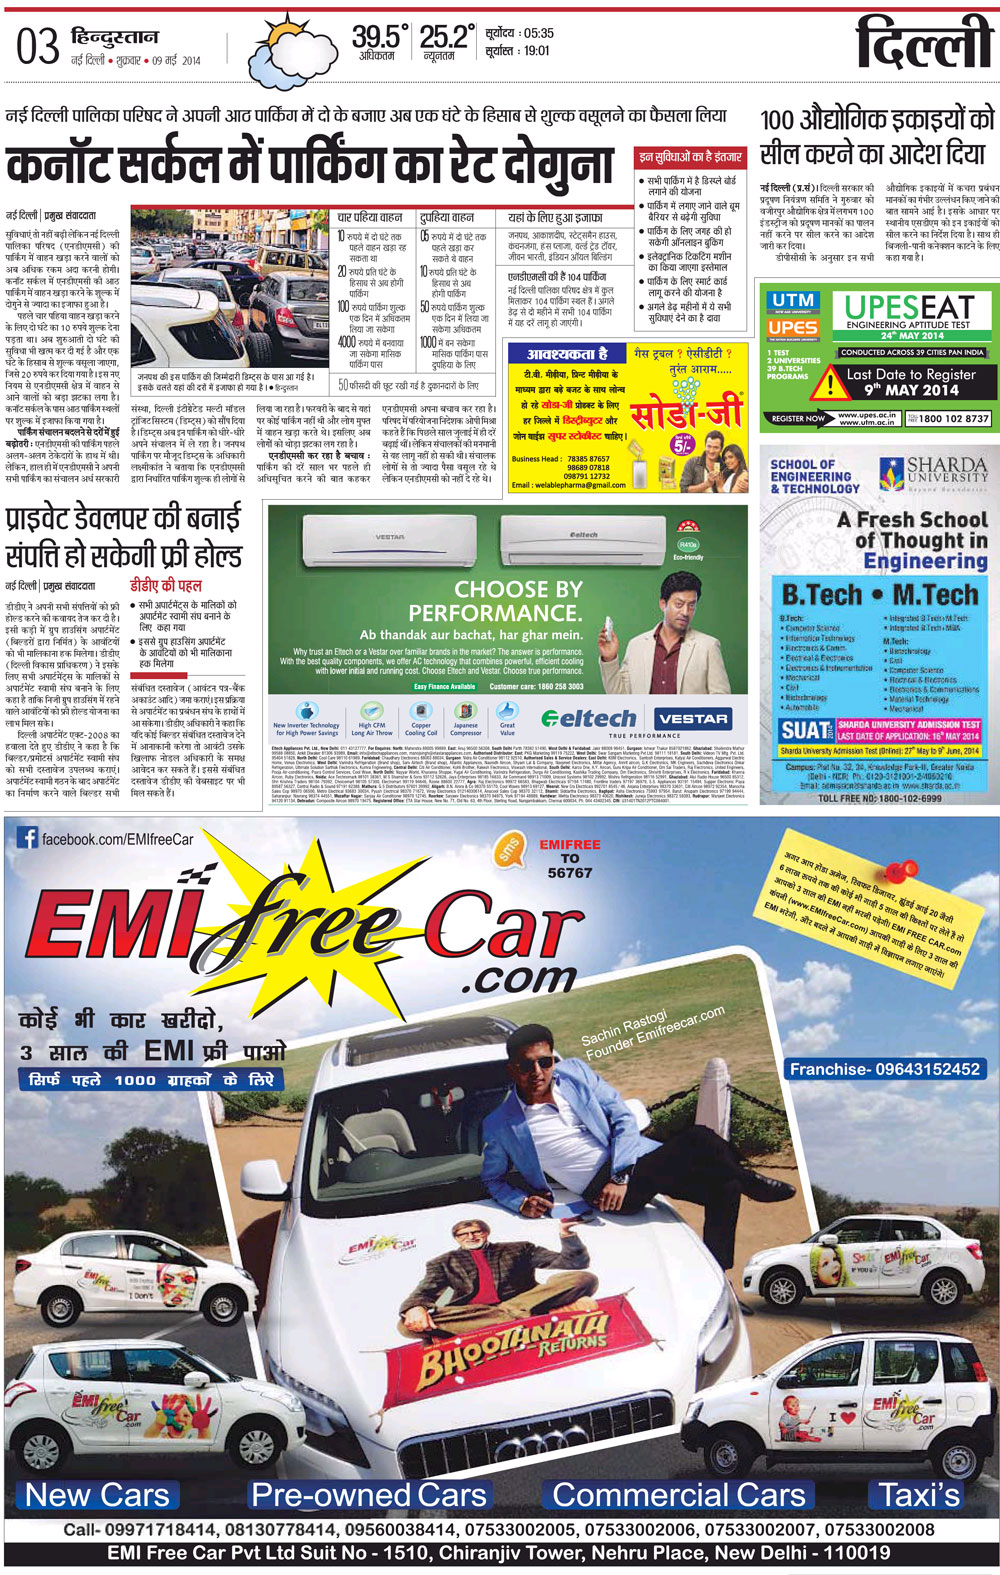 EMI Free Car Pvt. Ltd.